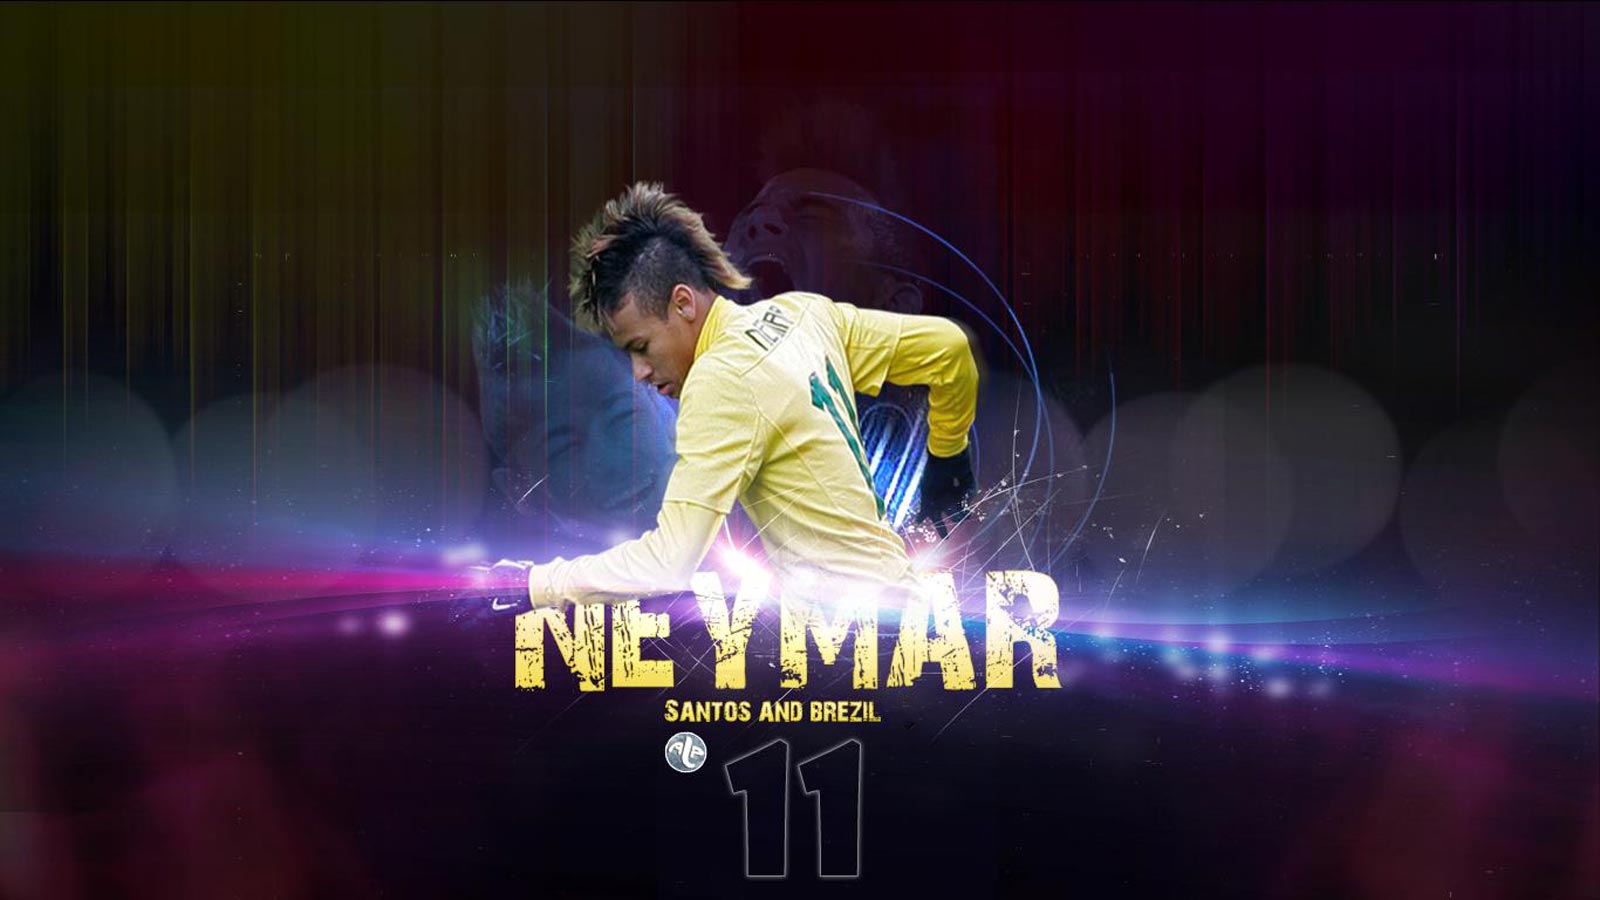 Wallpaper Neymar Imagebank Biz